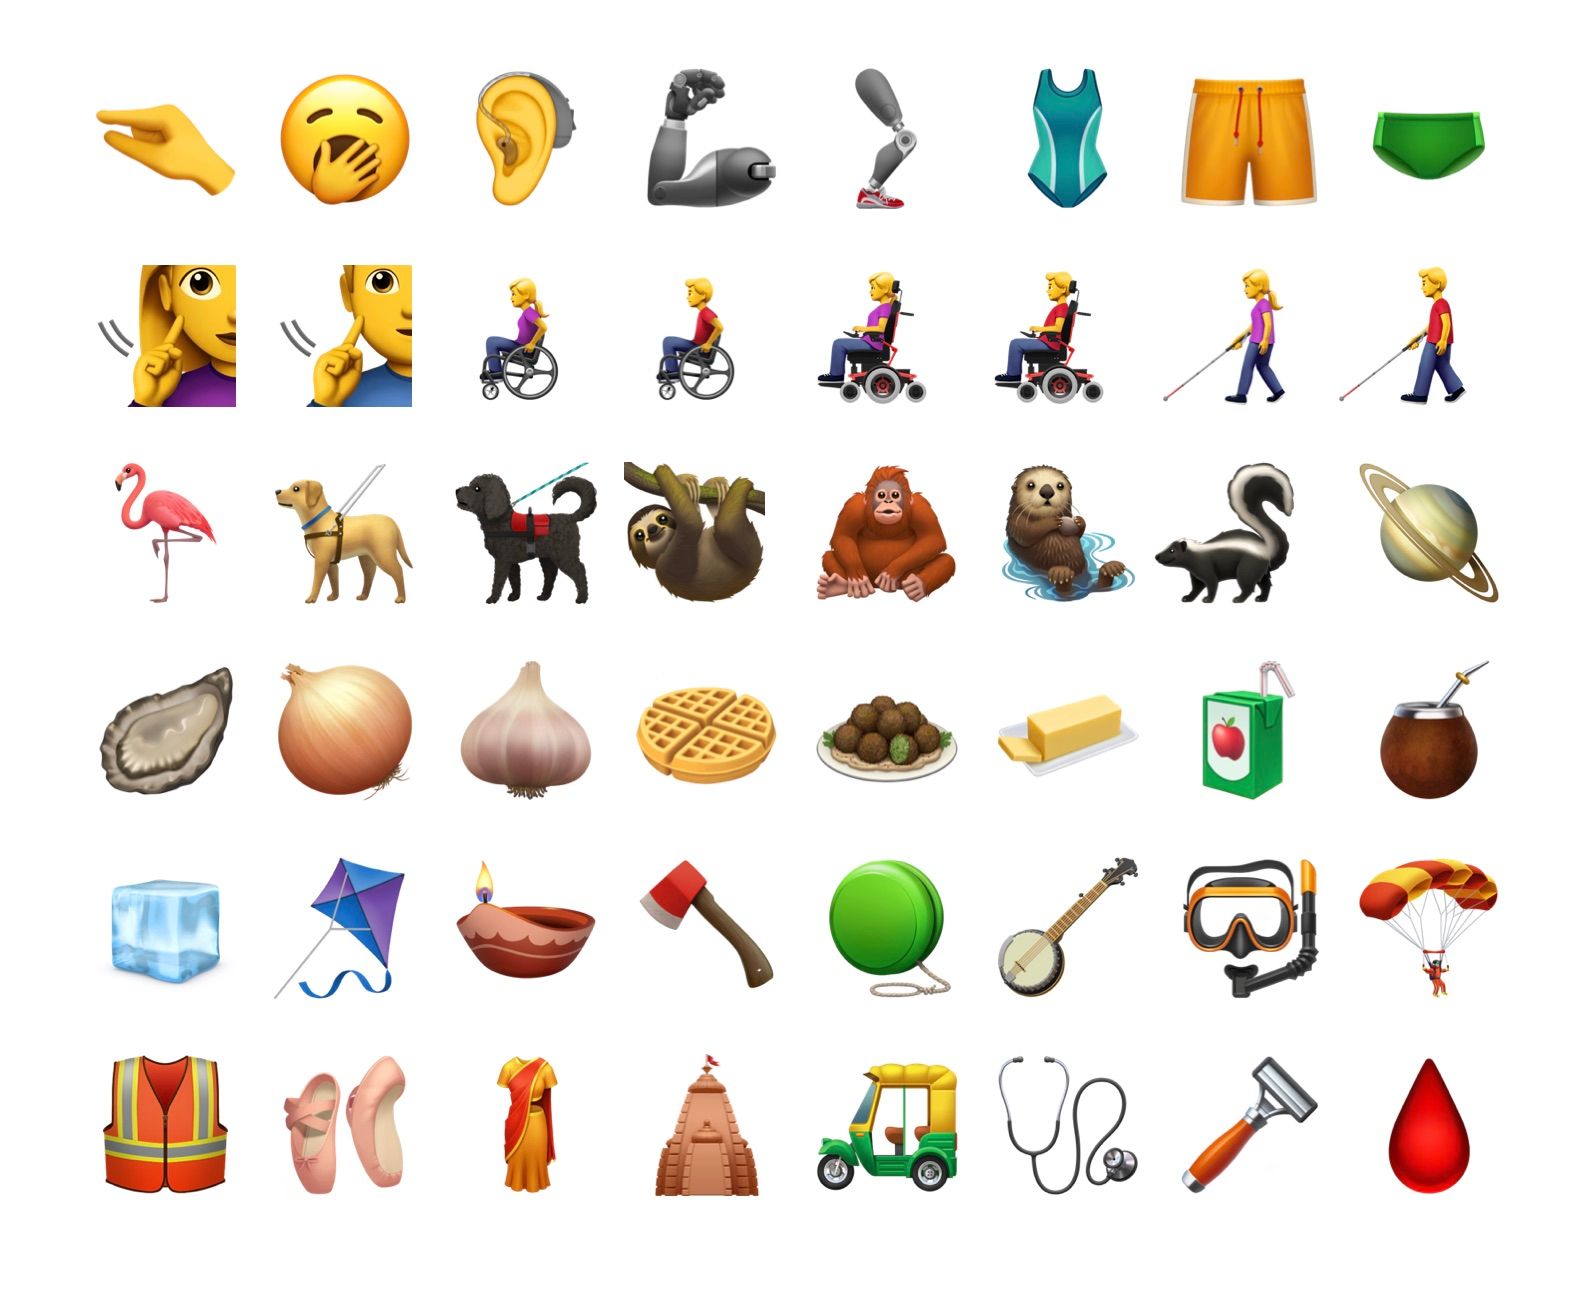 Nuevos emojis que llegarán con iOS 13.2 (vía emojipedia)